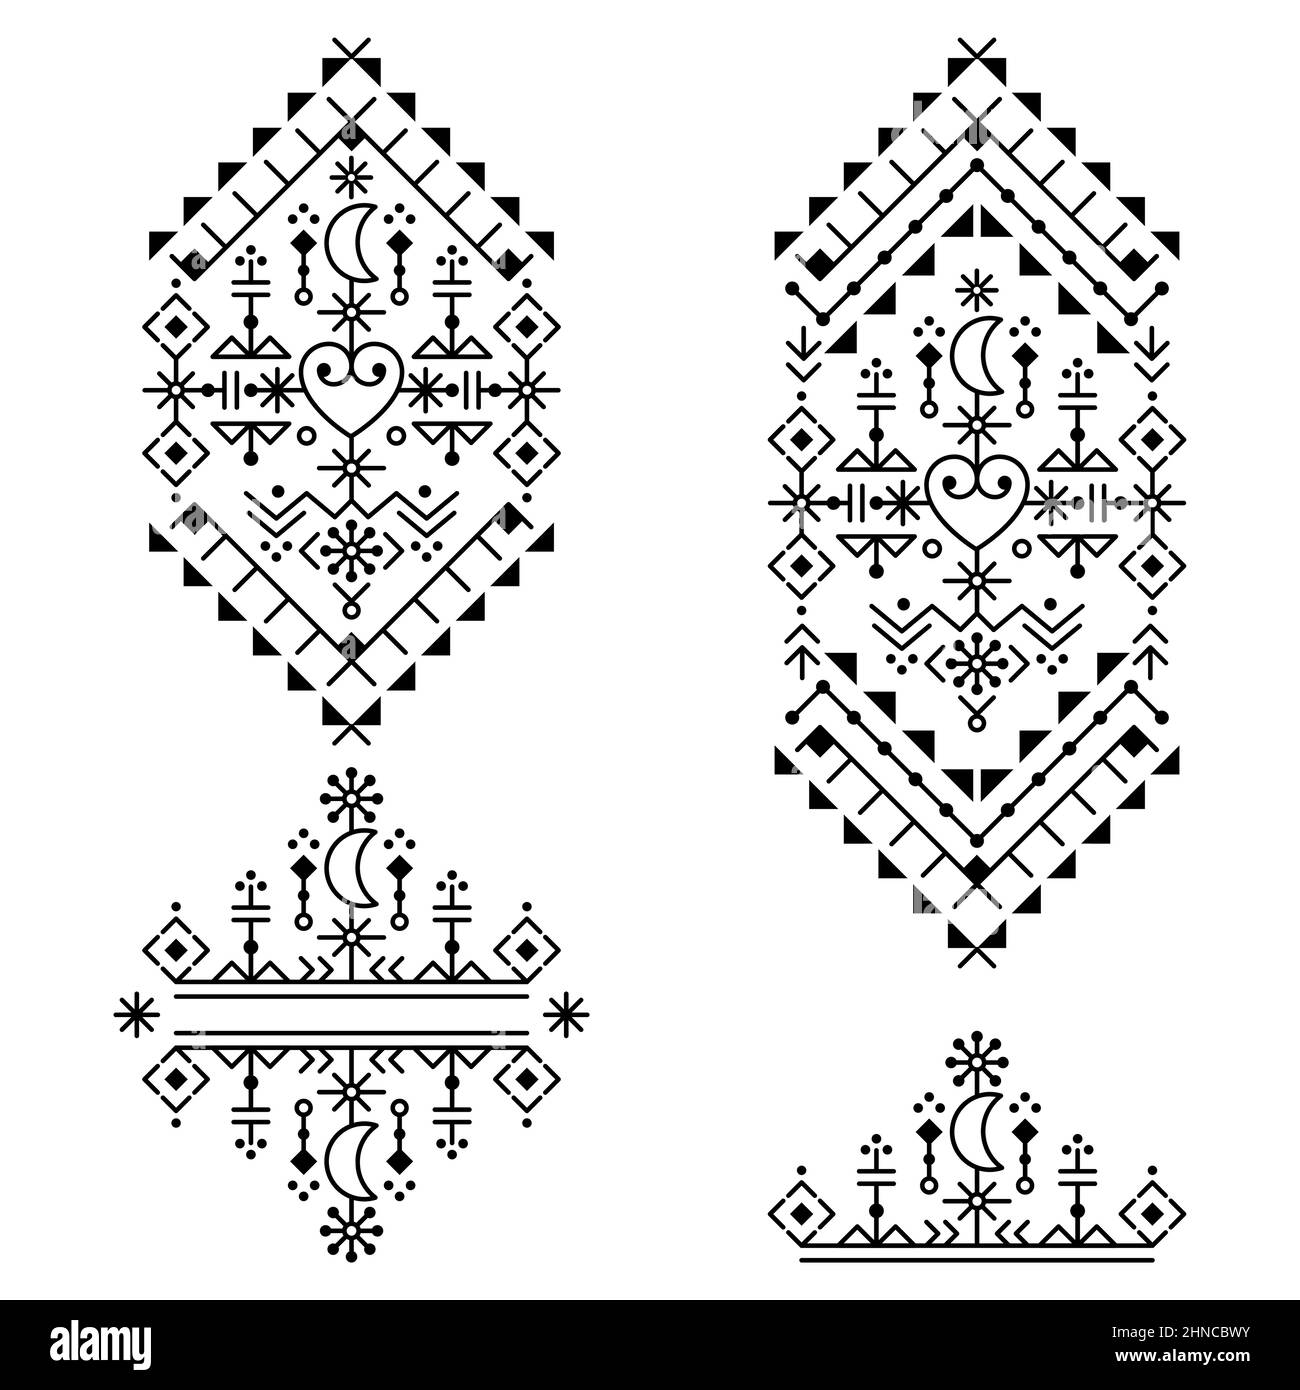 Ensemble de motifs vectoriels géométriques de style scandinave, motif tribal, collection de motifs noir et blanc avec coeurs et lunes inspirés des runes viking Illustration de Vecteur